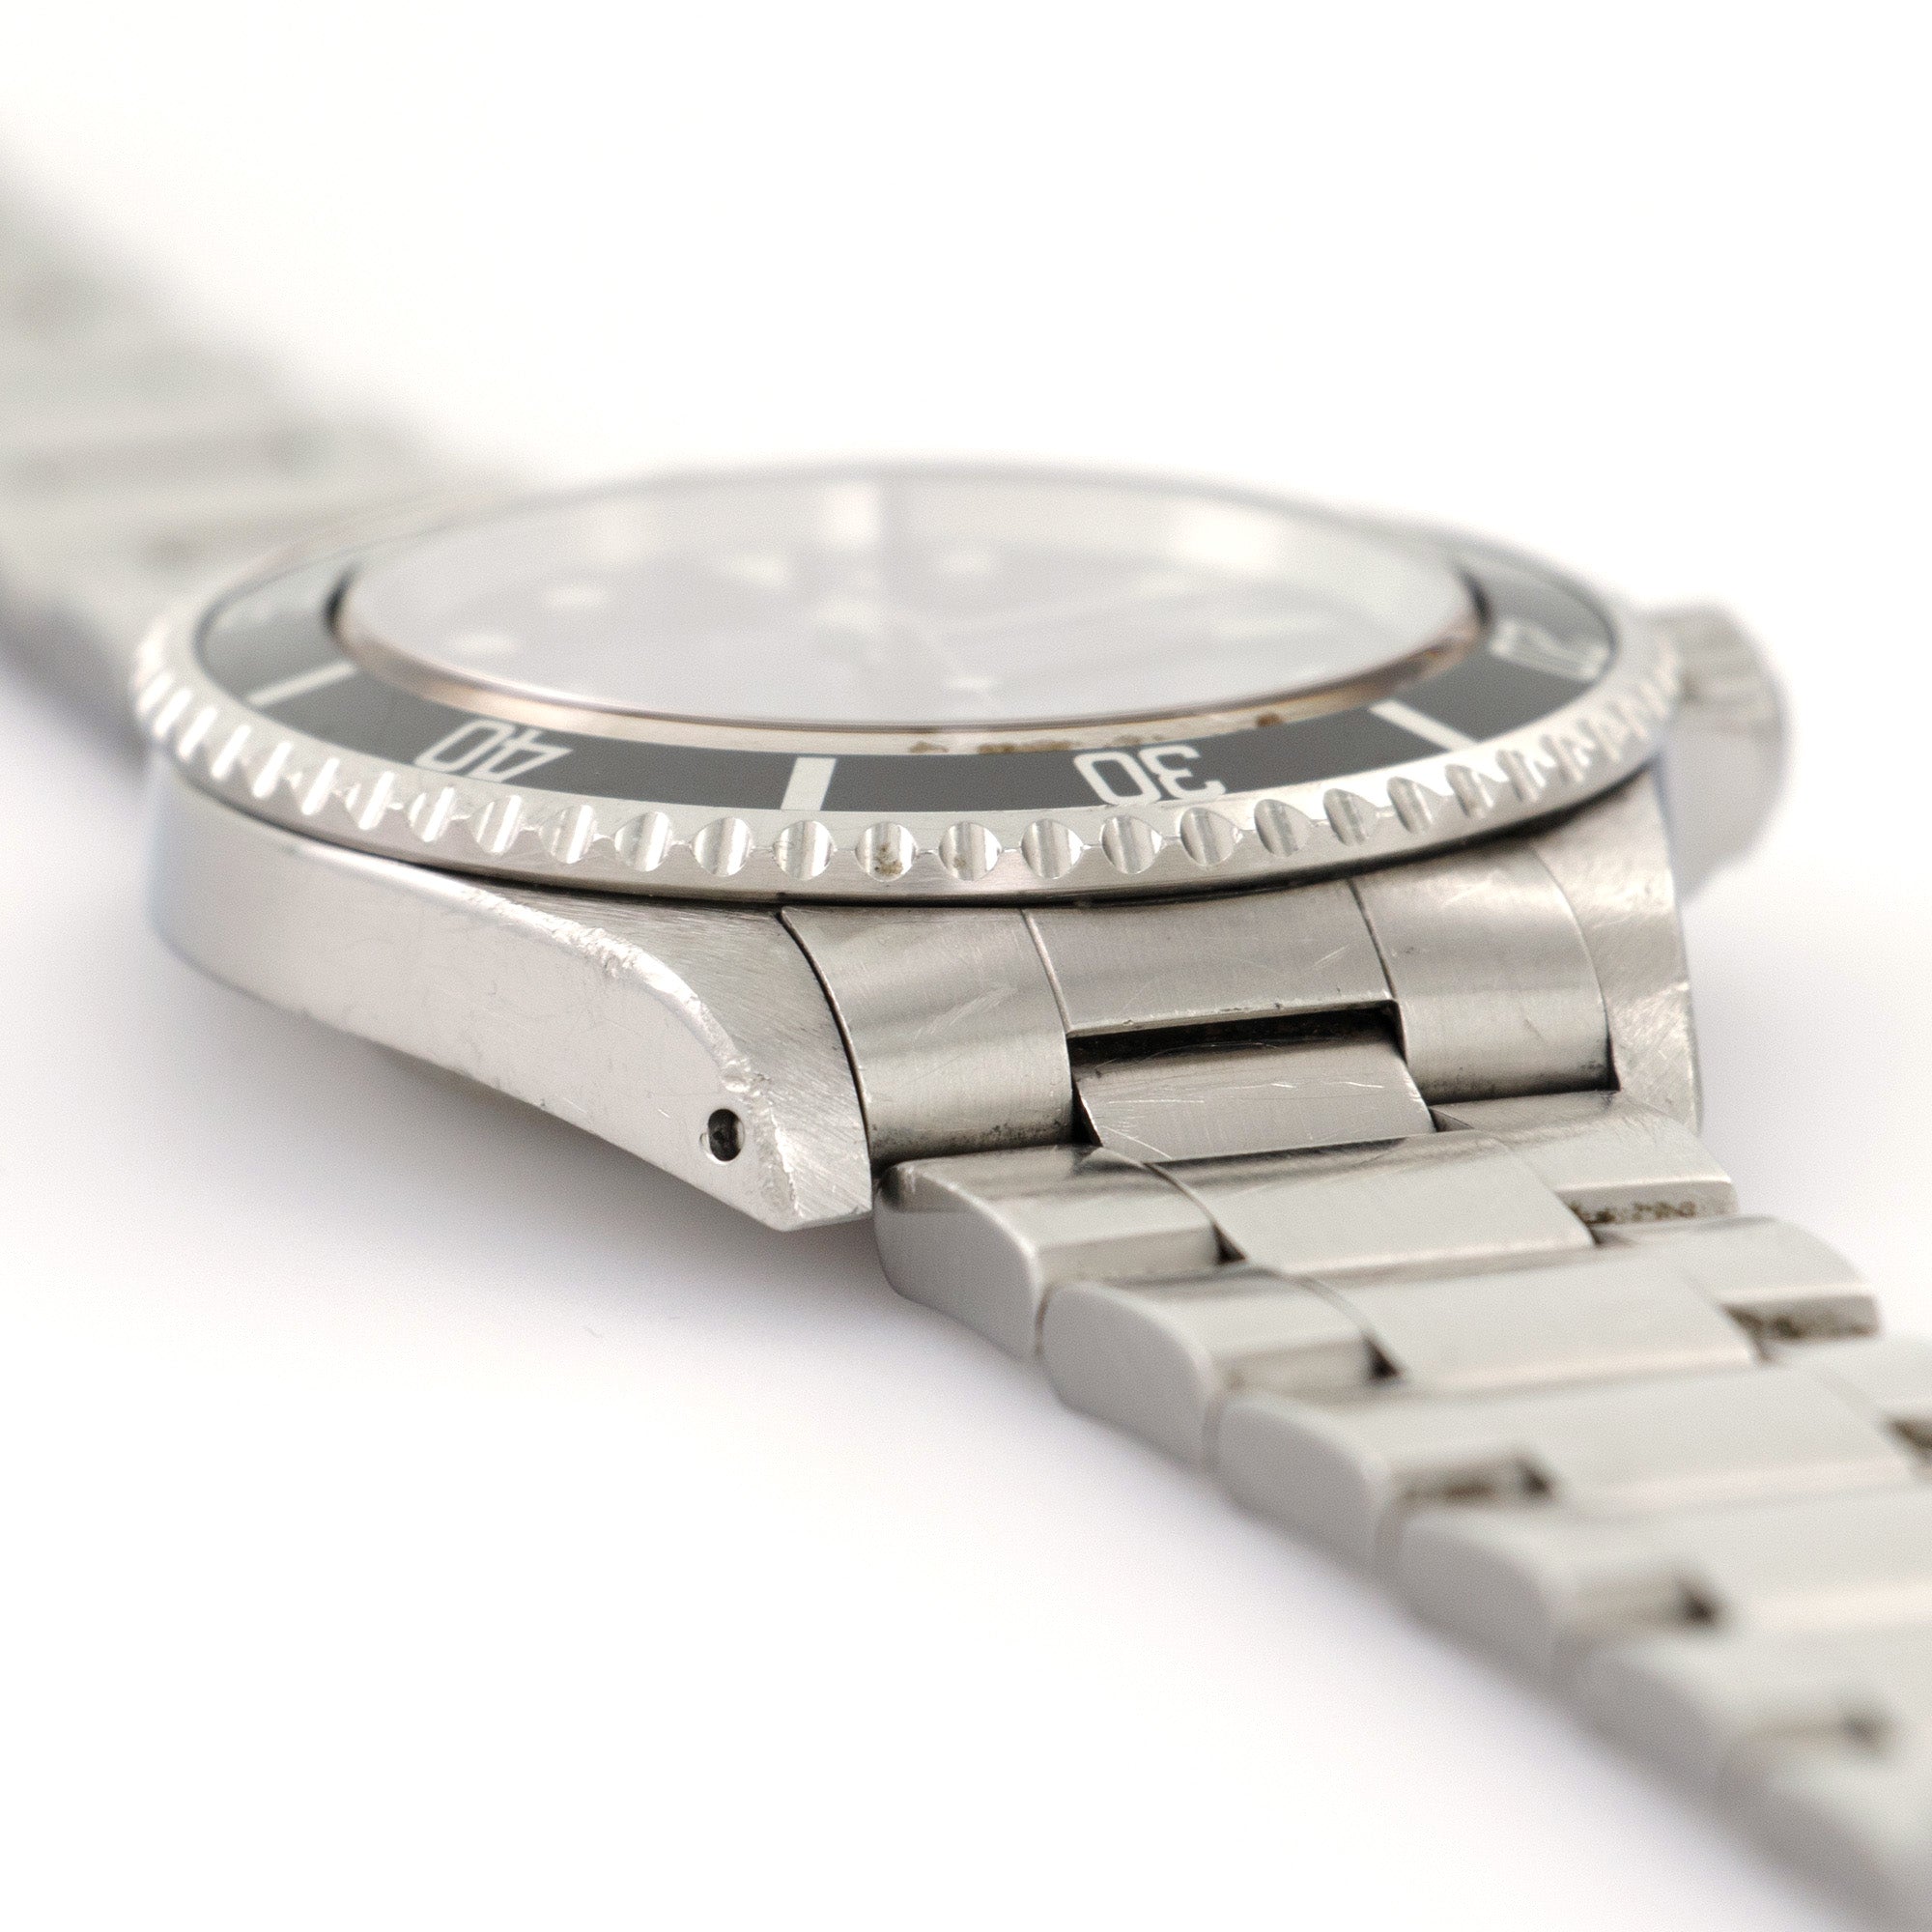 Rolex - Rolex Submariner Watch Ref. 14060 with Original Warranty Paper - The Keystone Watches